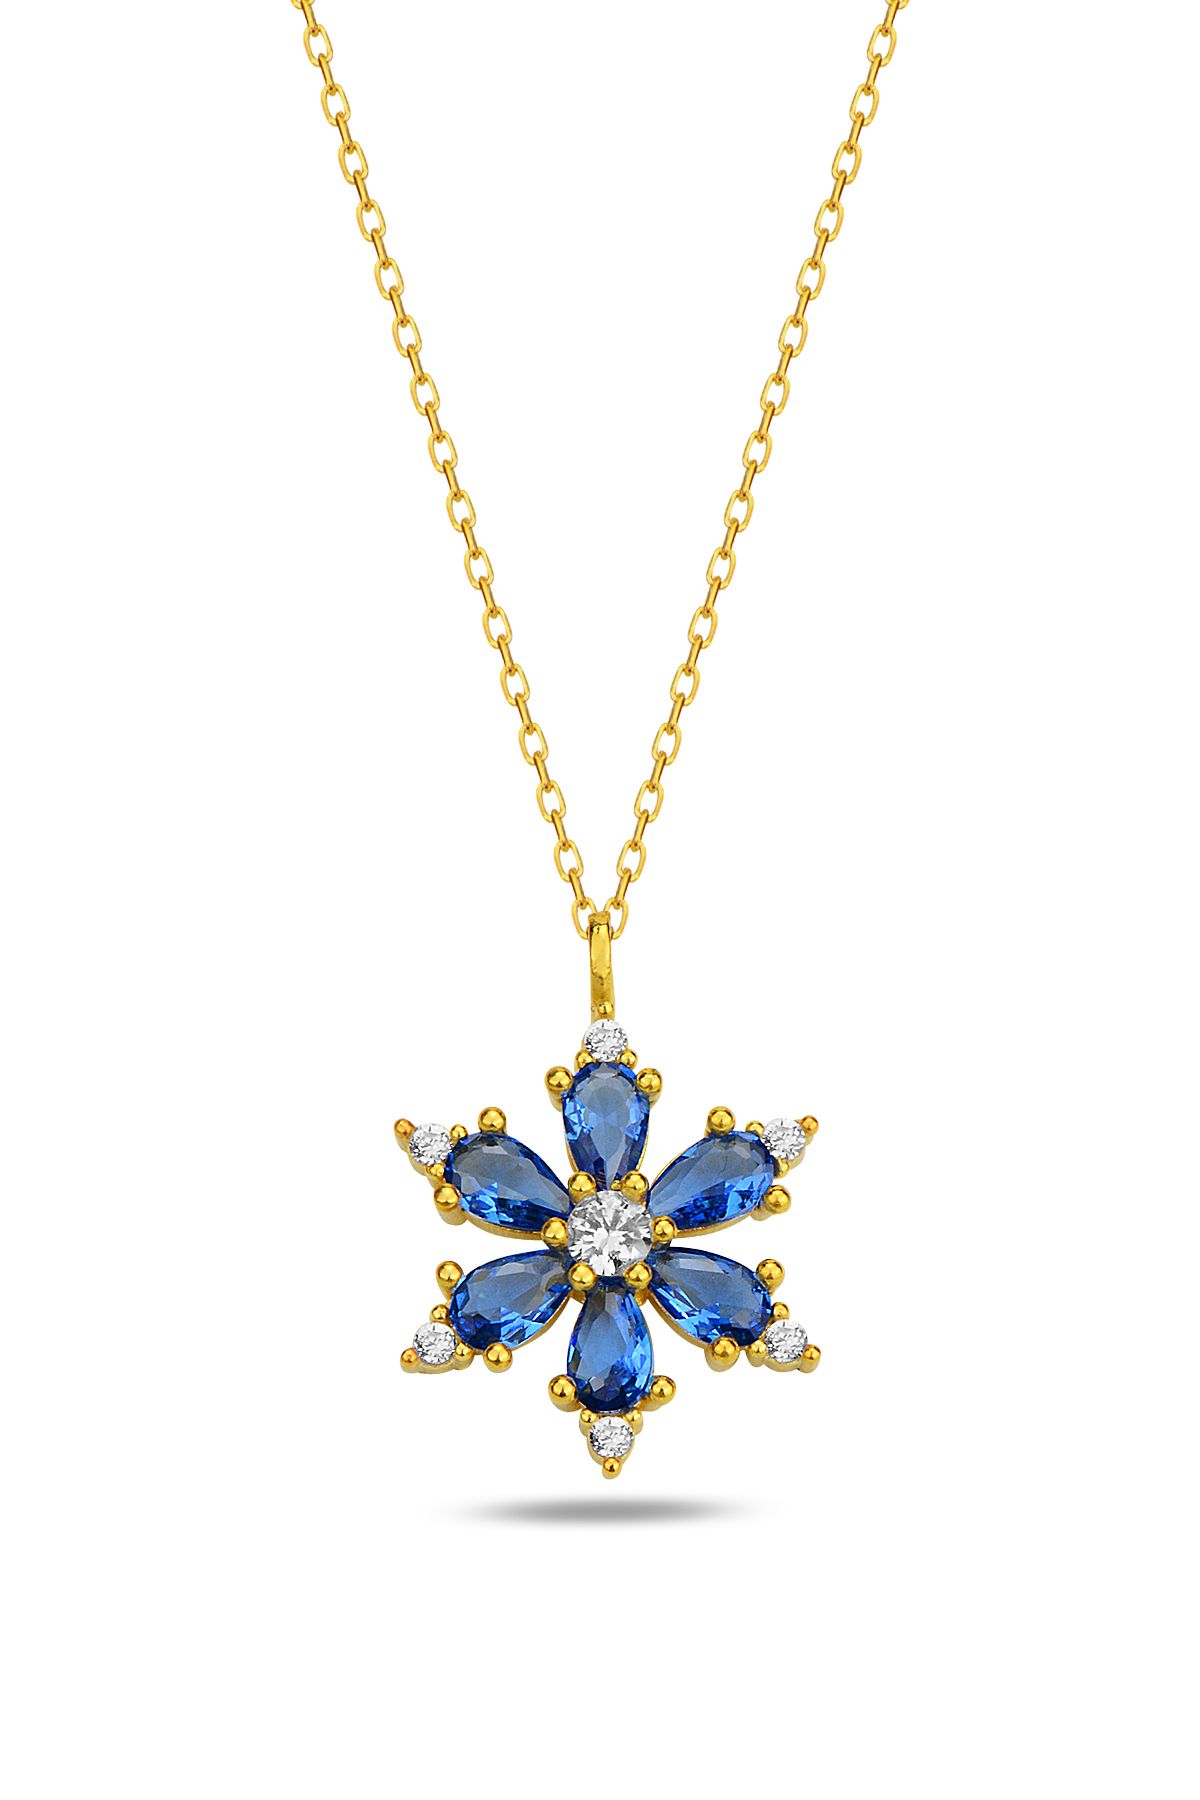 KAR DİAMOND 925 Ayar Gümüş Zincirli Altın Kaplama Mavi Damla Taşlı Kamelya Lotus Çiçeği Kolye - Sertifikalı